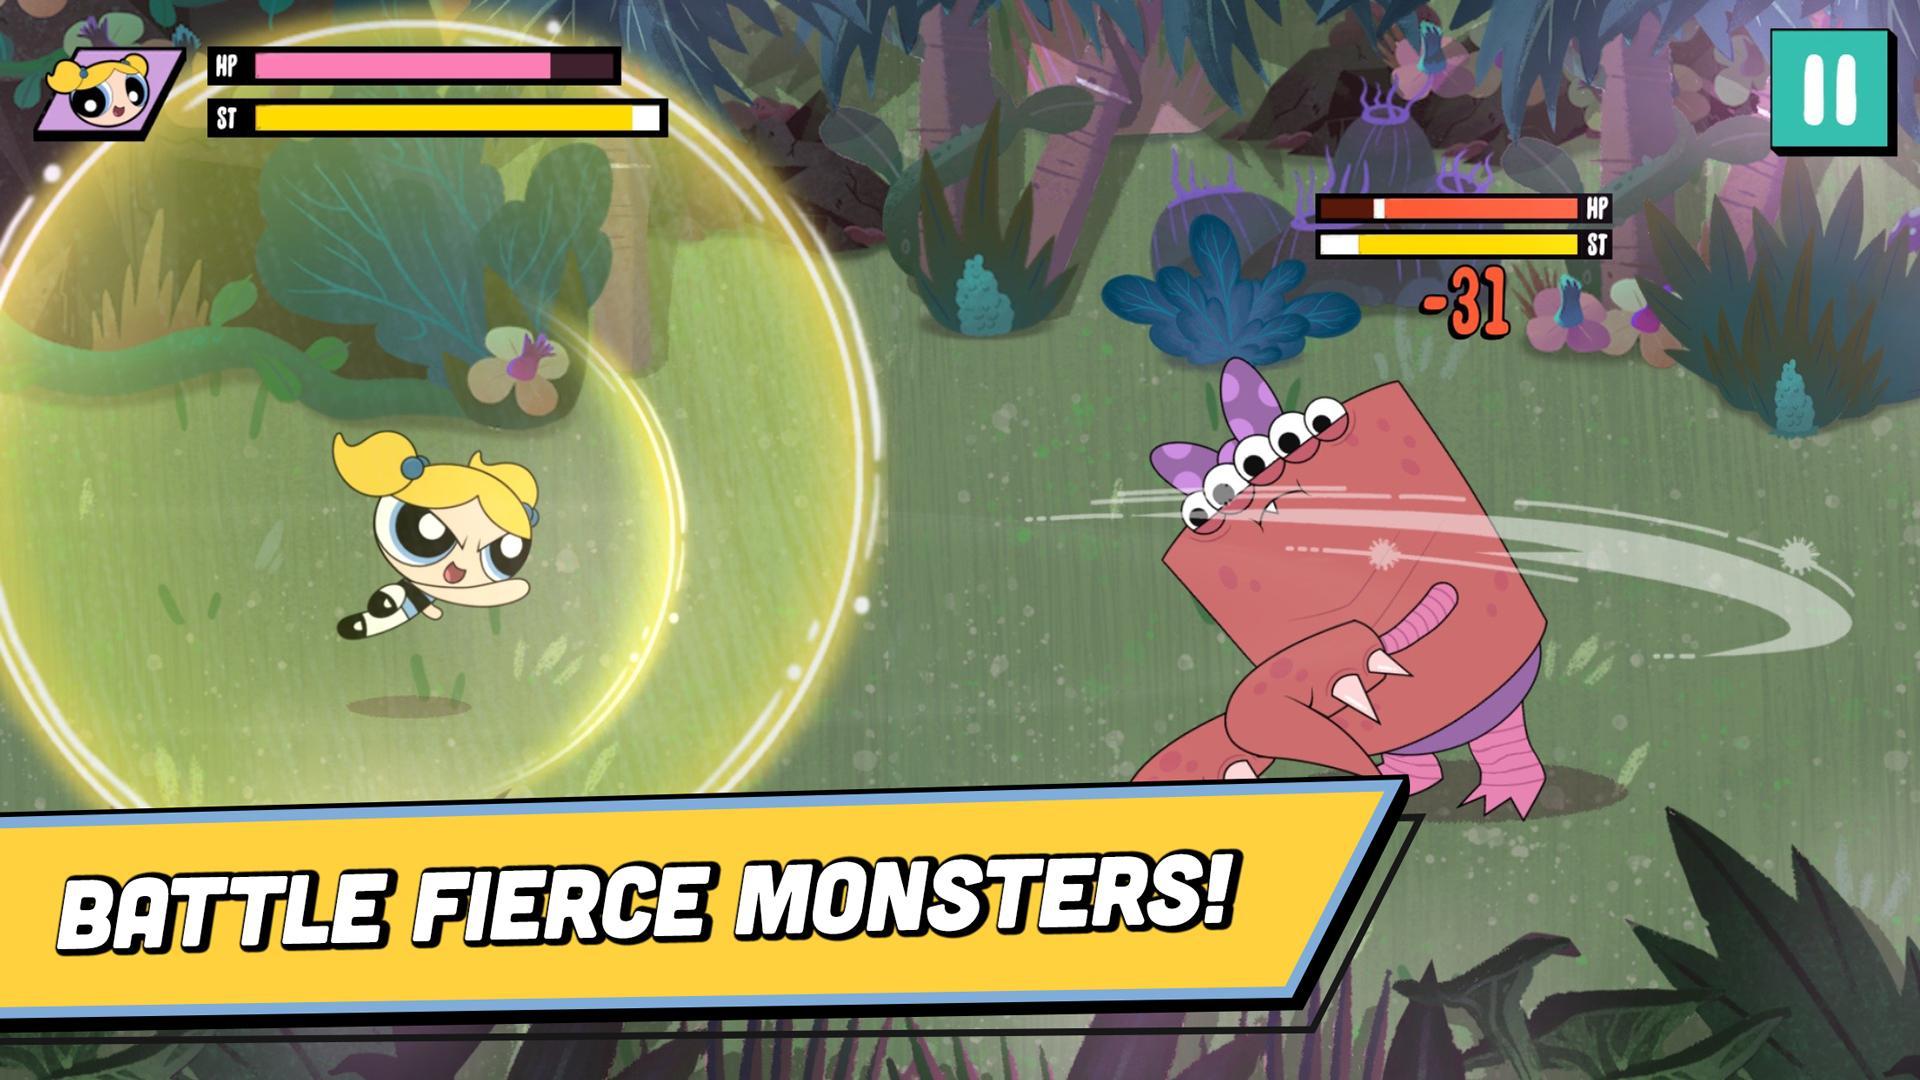 Screenshot 1 of Pronto, pronto, monstros! - As meninas Super Poderosas 1.0.1